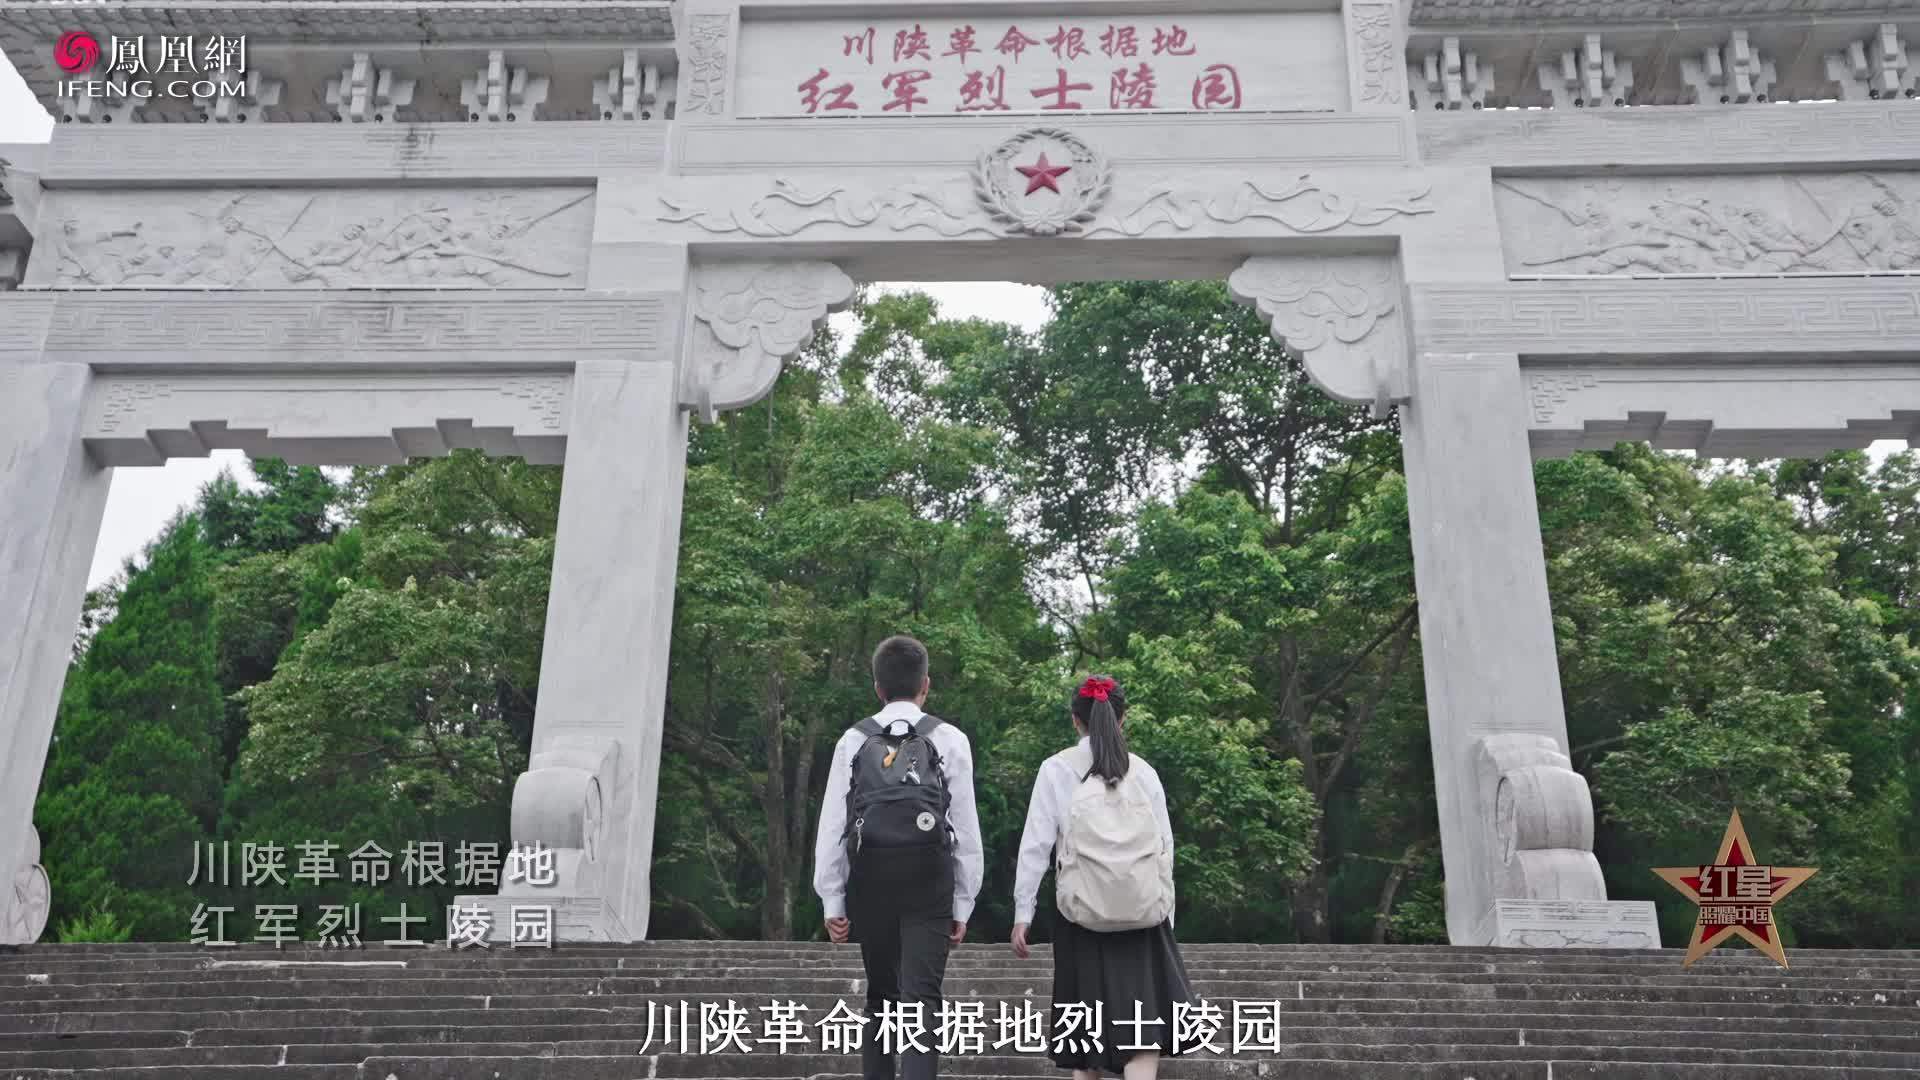 红星照耀中国|中国革命史上可歌可泣的一幕 数万红军埋骨这里